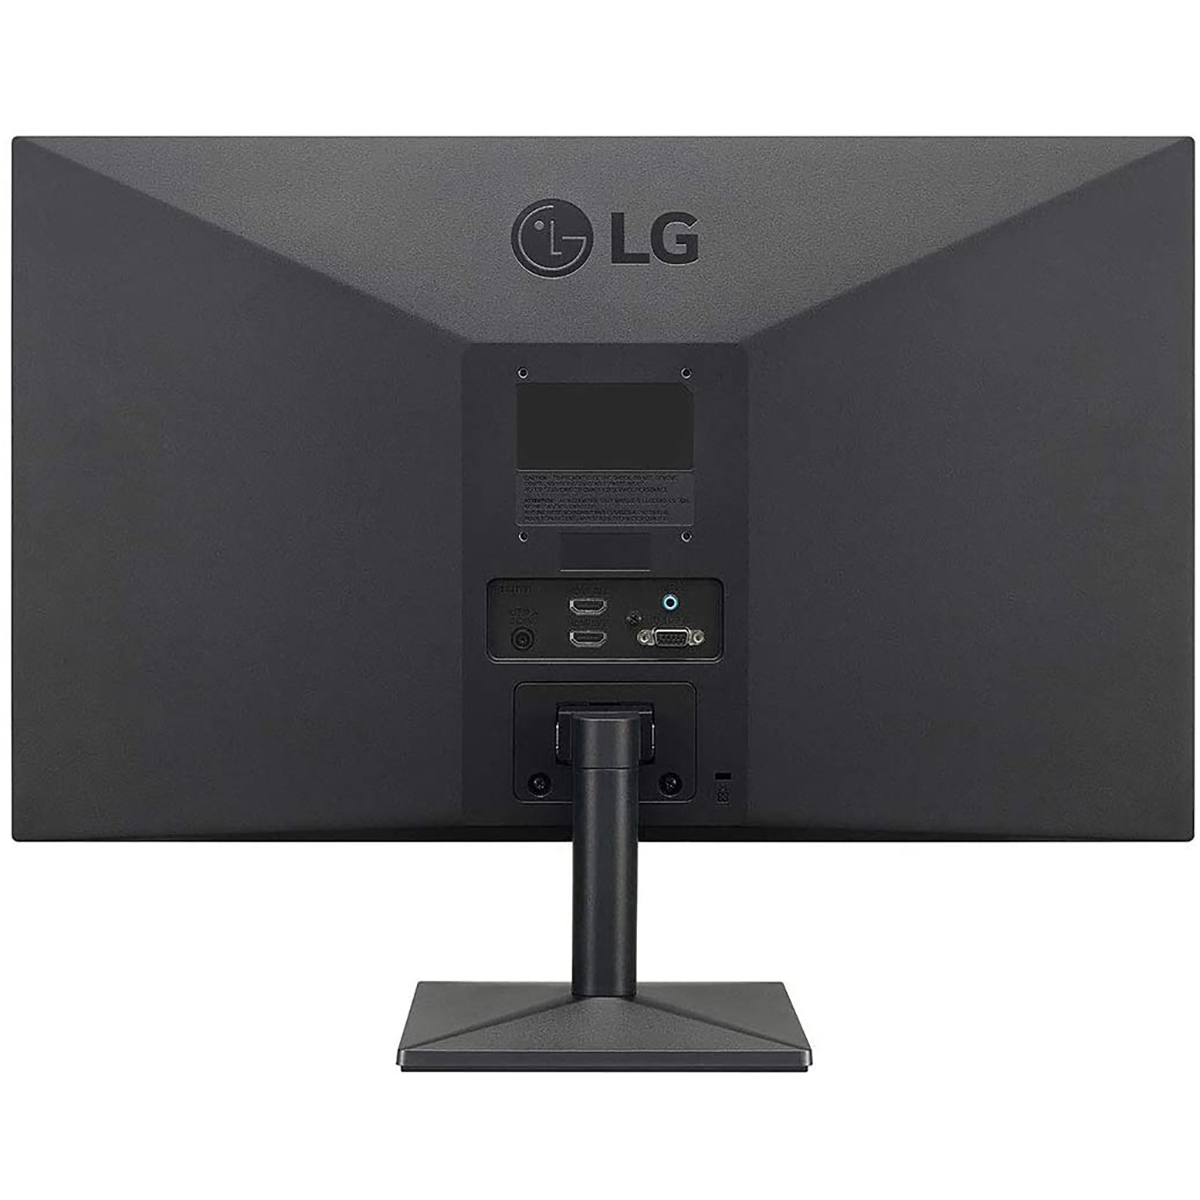 LG 22MN430M-B 21.5 Inch FHD (1920x1080) IPS Black Flat Monitor (